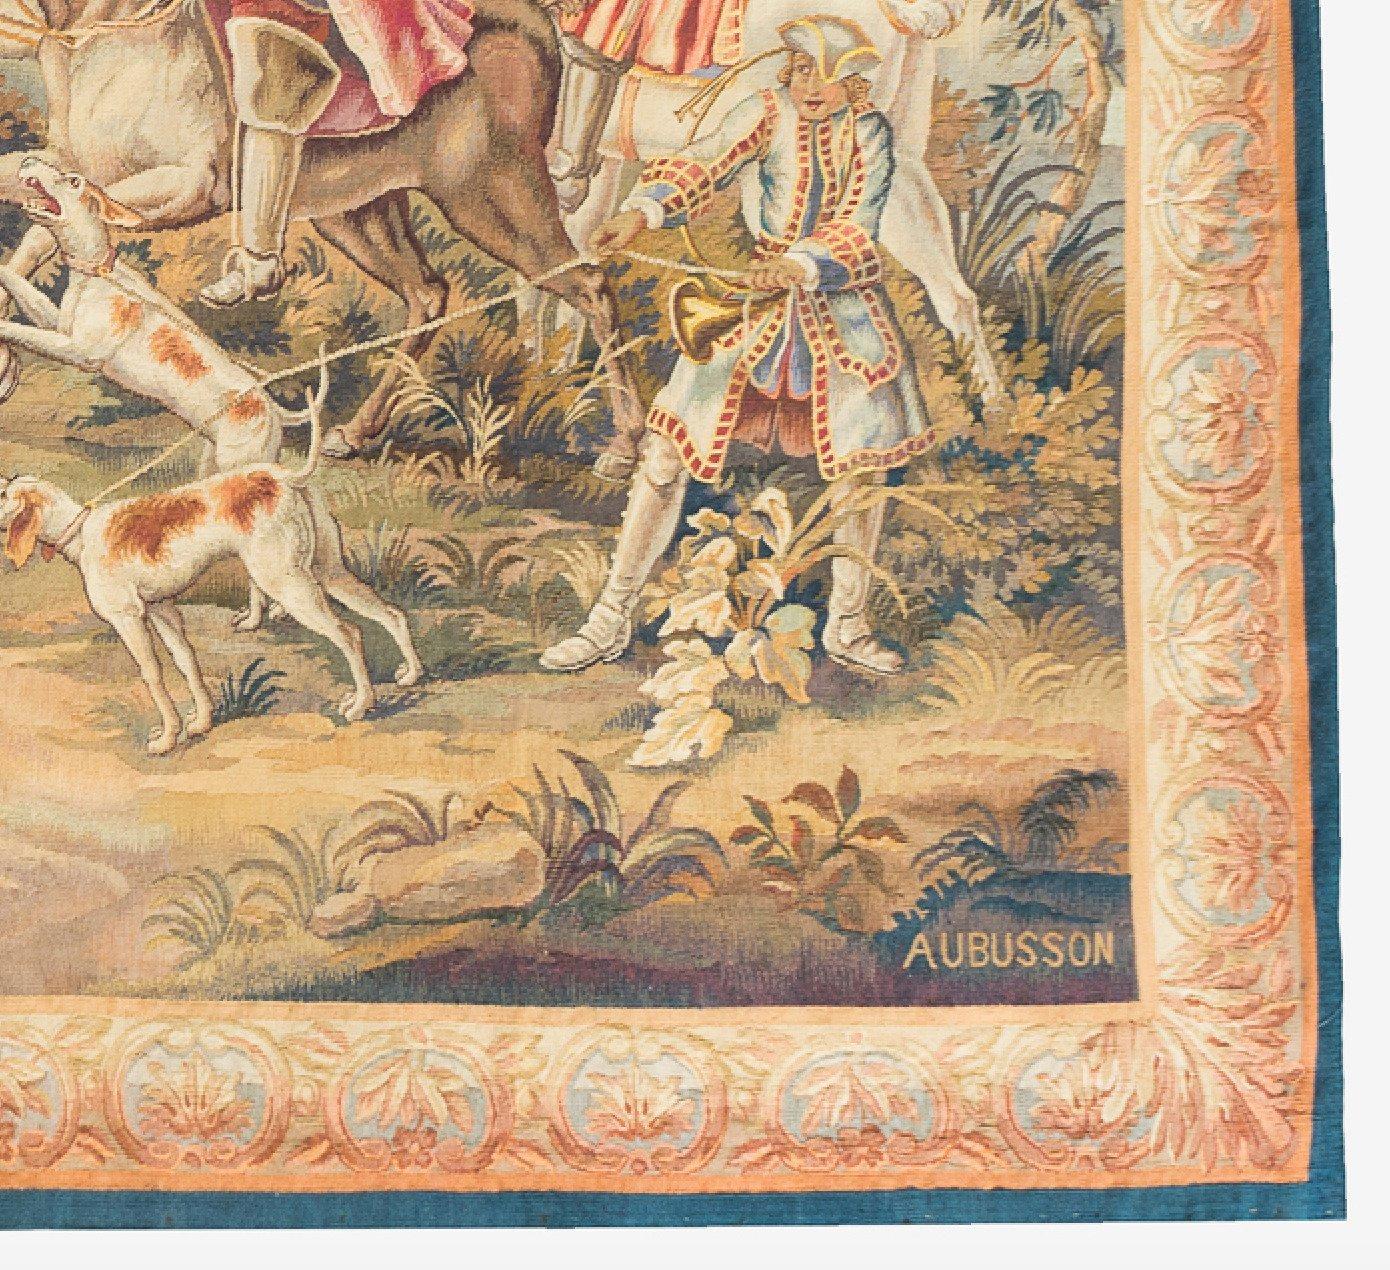 Ancienne tapisserie d'Aubusson du XIXe siècle représentant une scène de chasse sur les rives d'une rivière avec des hommes sur des chevaux blancs et des chiens de chasse qui ont capturé un cerf dans la rivière. La scène est entourée de terrains